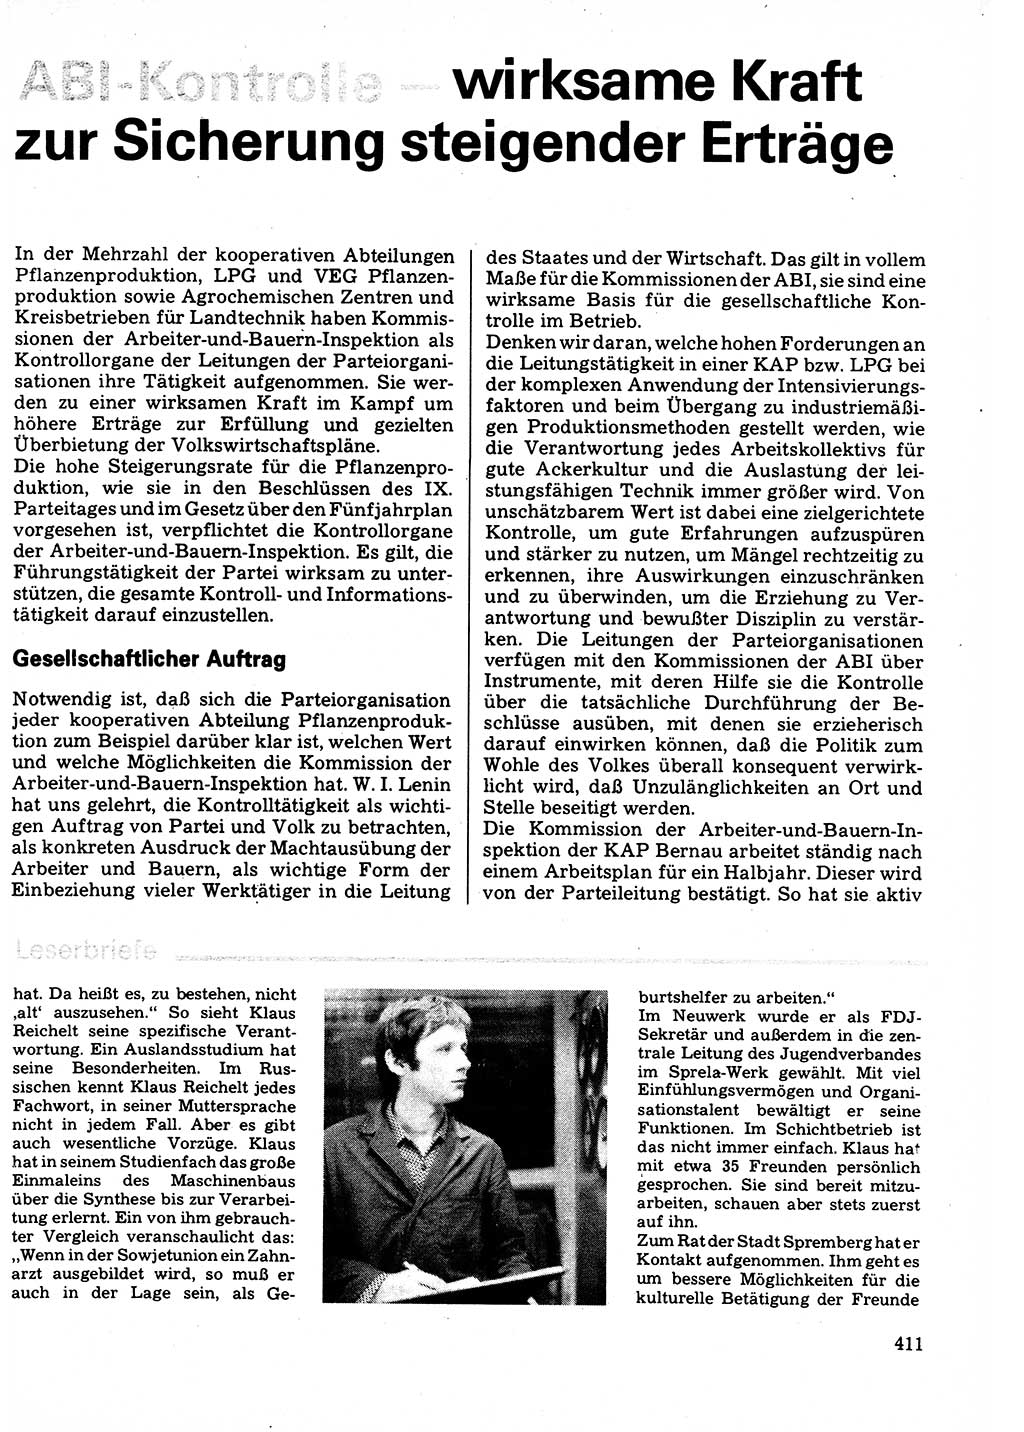 Neuer Weg (NW), Organ des Zentralkomitees (ZK) der SED (Sozialistische Einheitspartei Deutschlands) für Fragen des Parteilebens, 32. Jahrgang [Deutsche Demokratische Republik (DDR)] 1977, Seite 411 (NW ZK SED DDR 1977, S. 411)